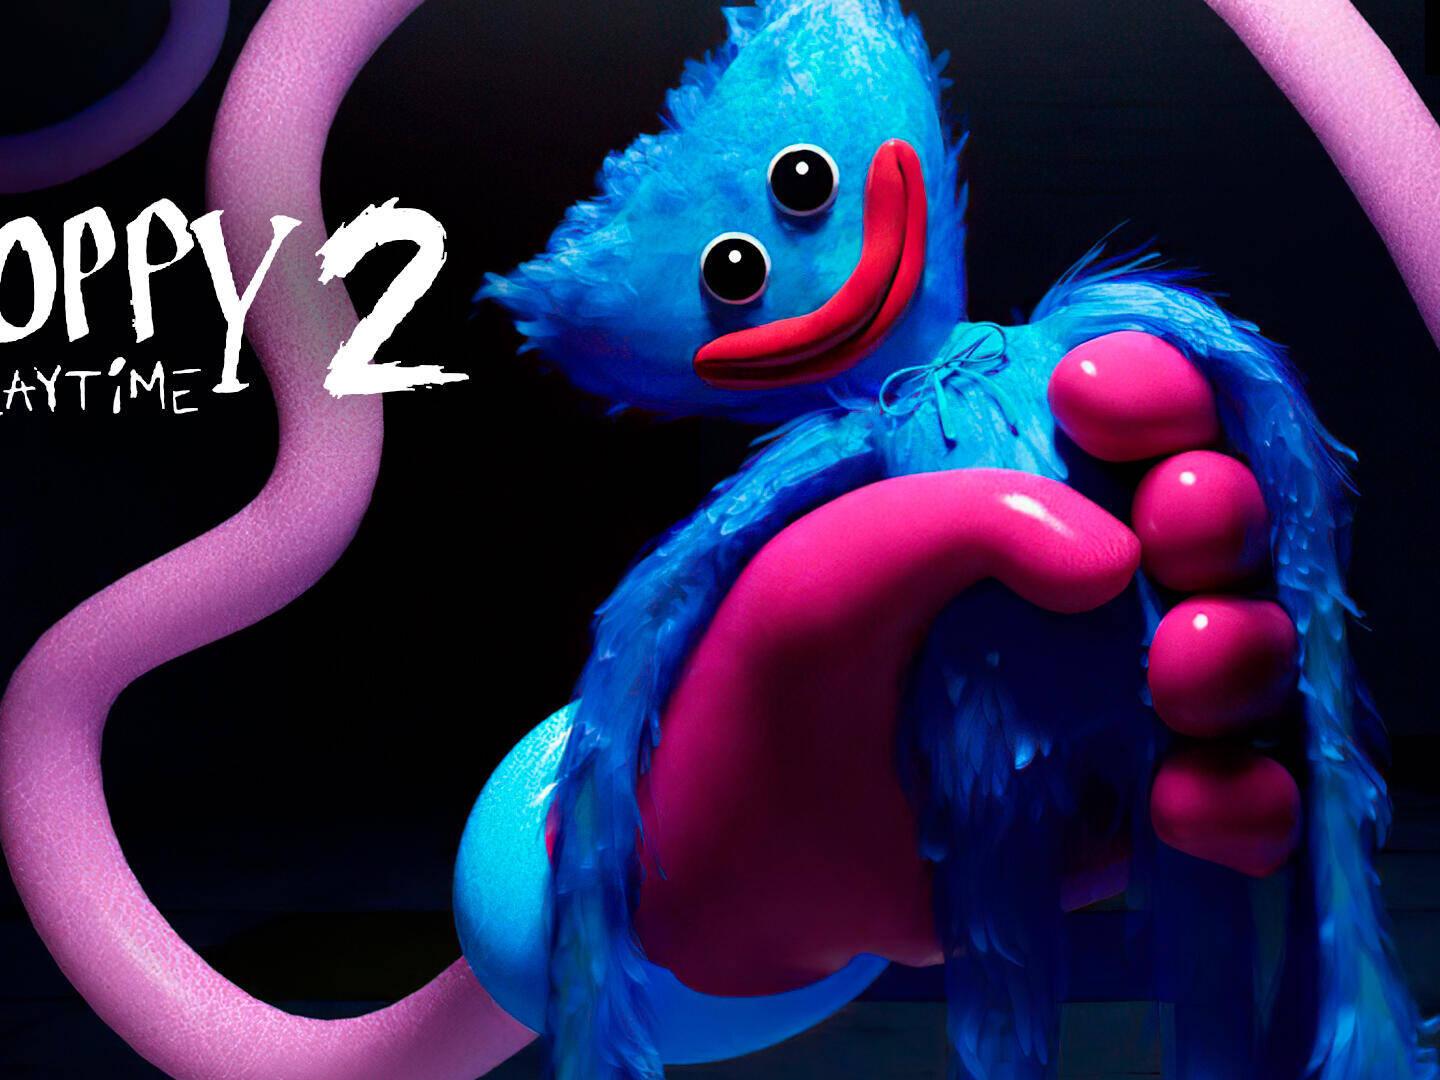 Poppy Playtime 2 llegó con el doble de terror pero también duplica su  precio - ¿De qué trata y cuánto sale? - Cultura Geek